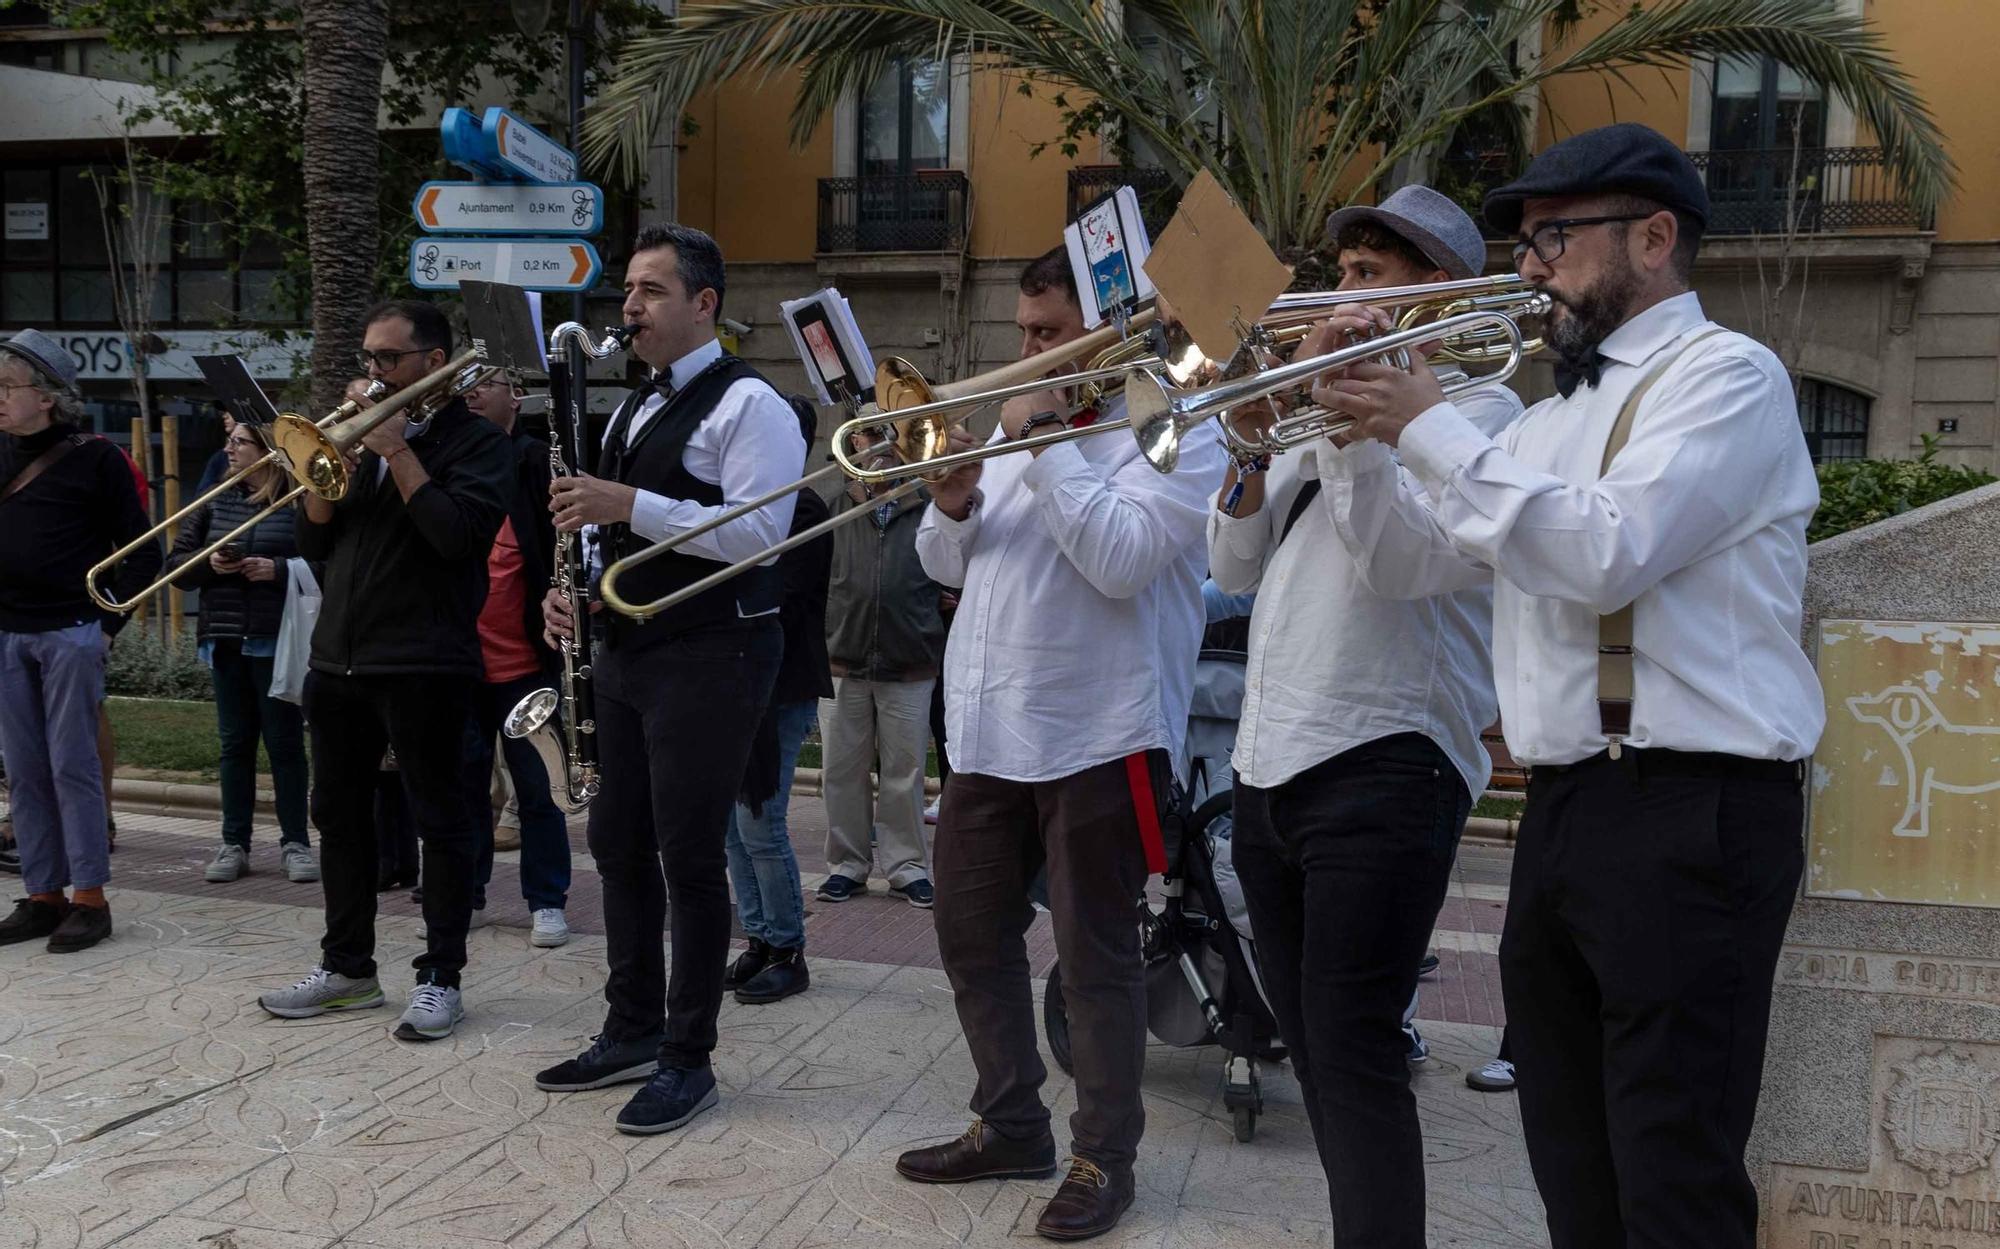 Alicante disfruta en la calle de los conciertos del Dia Internacional del Jazz